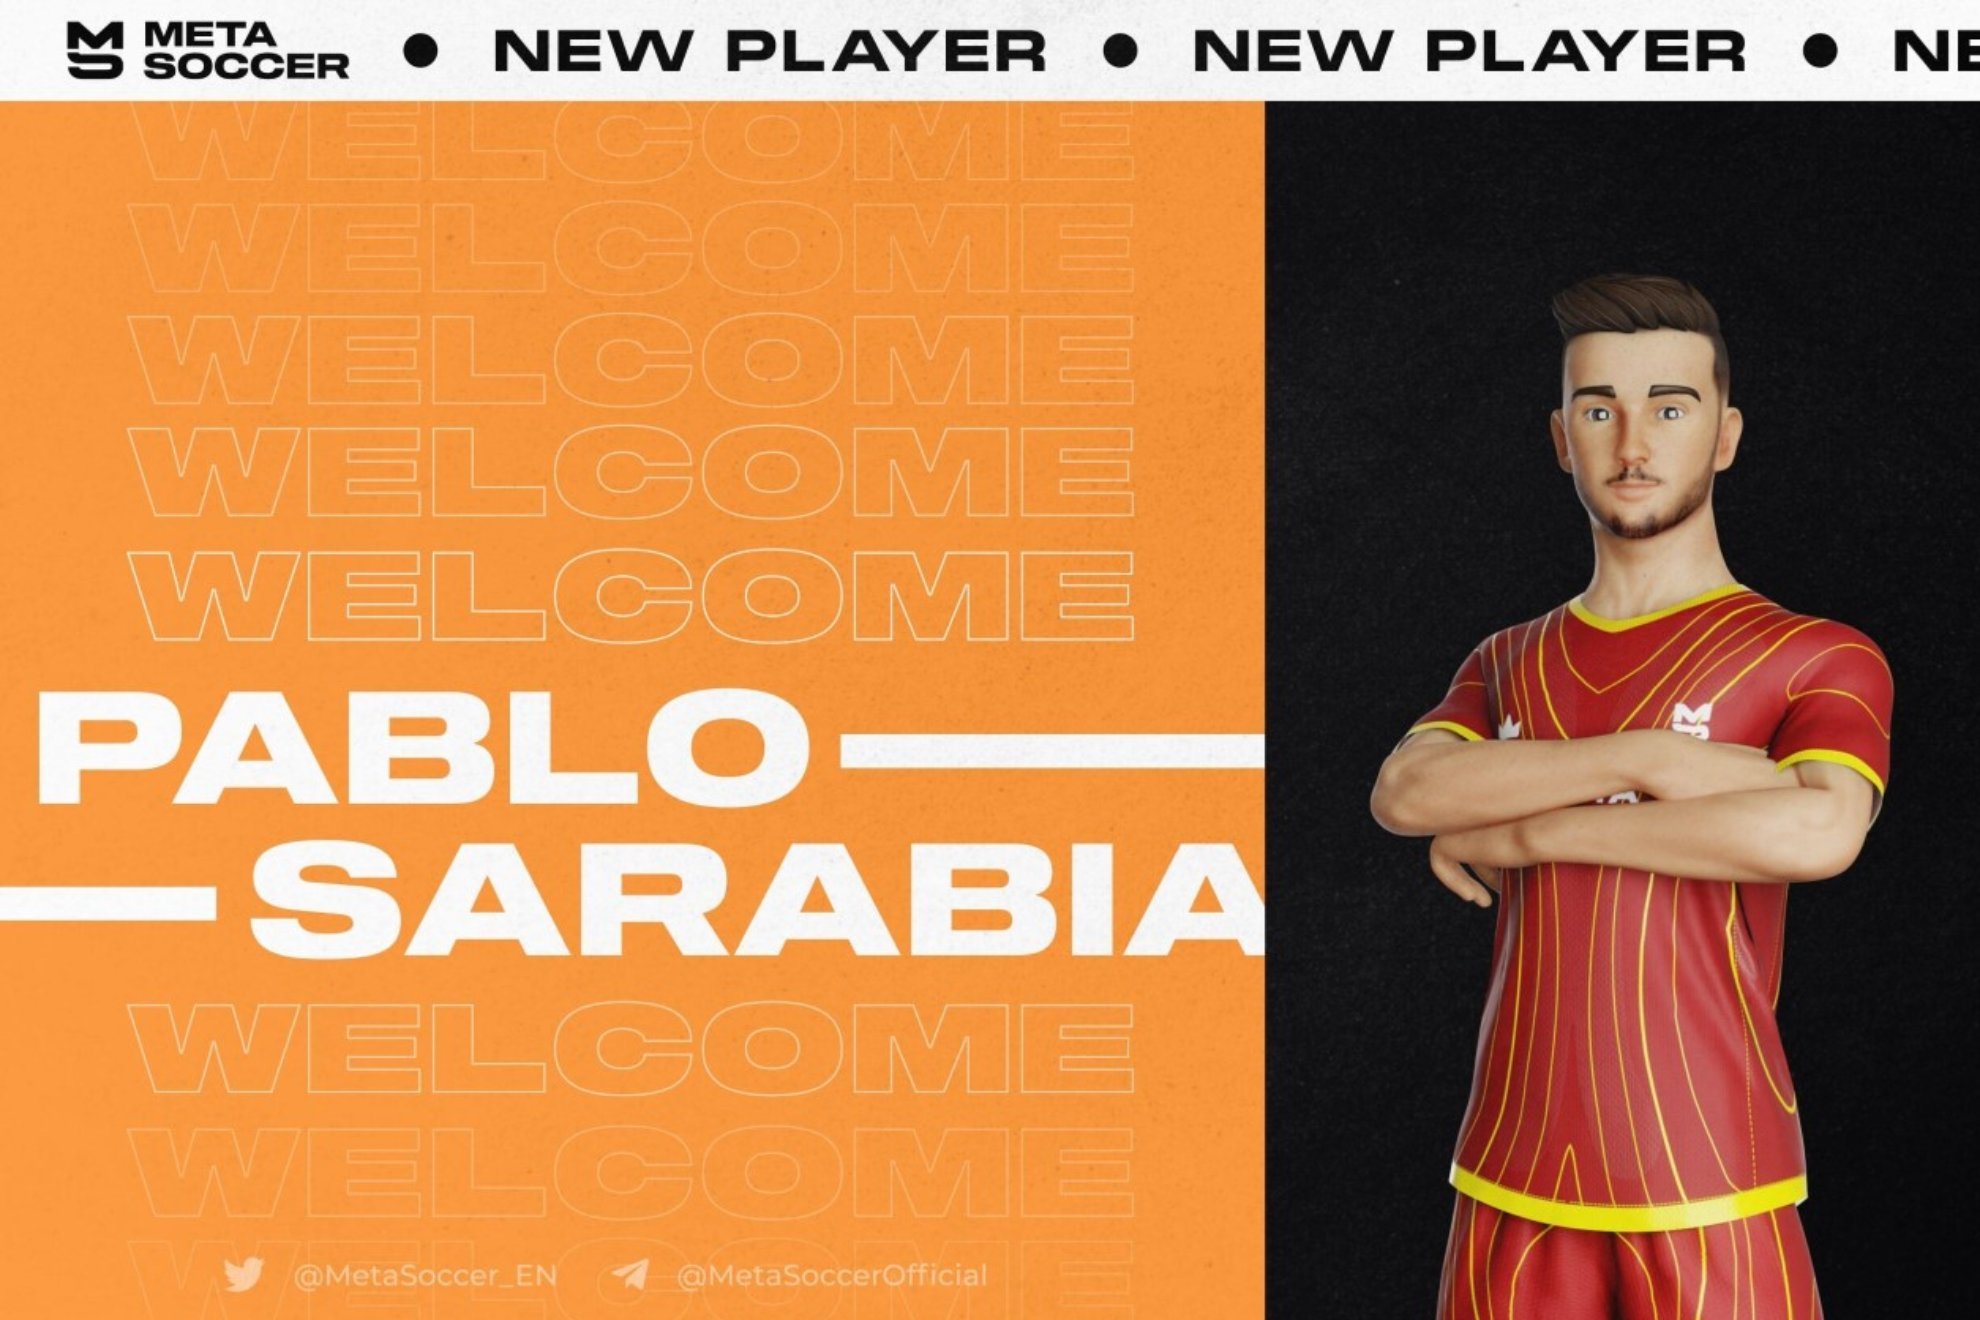 Pablo Sarabia pasa a formar parte del primer metaverso de fútbol